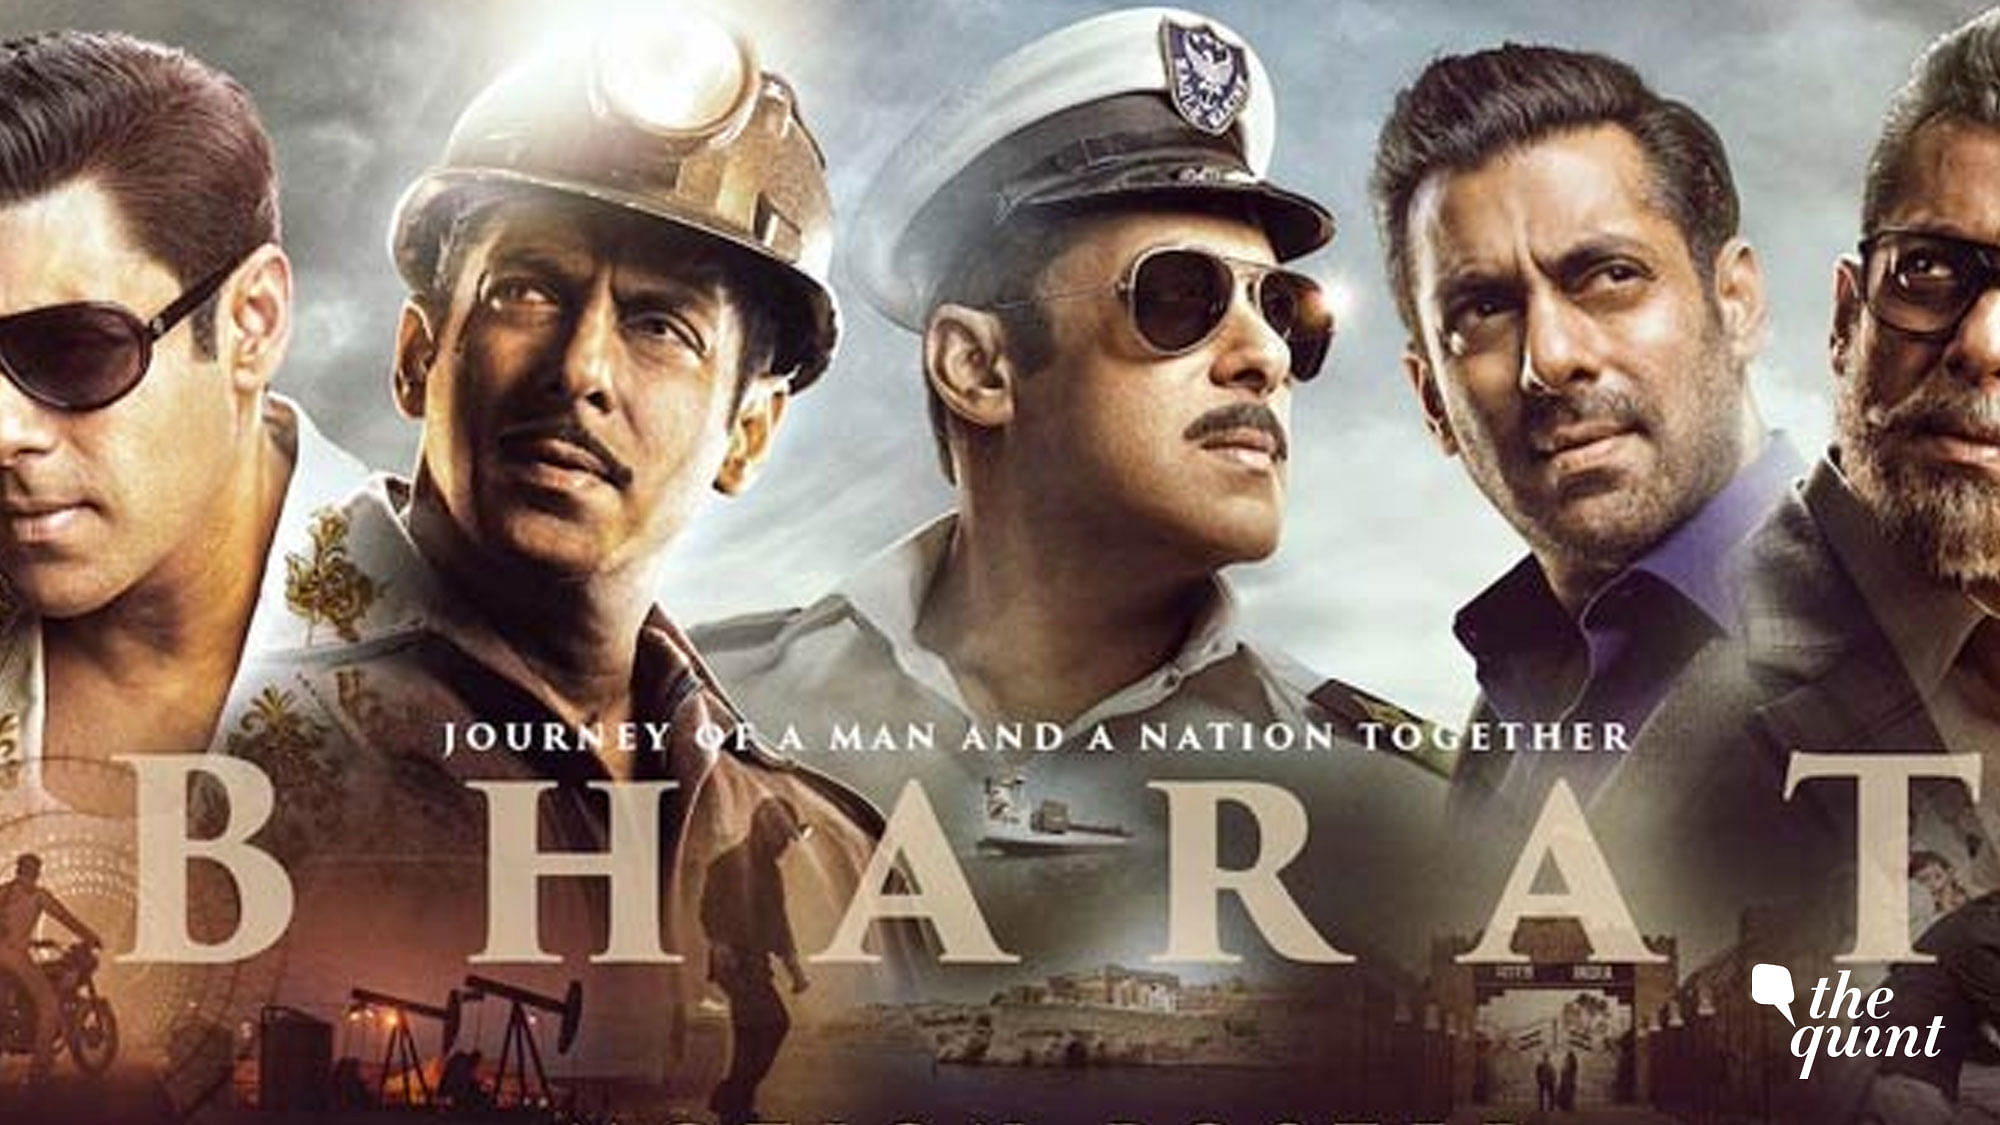 ‘Bharat’ starring Salman Khan and Katrina Kaif.